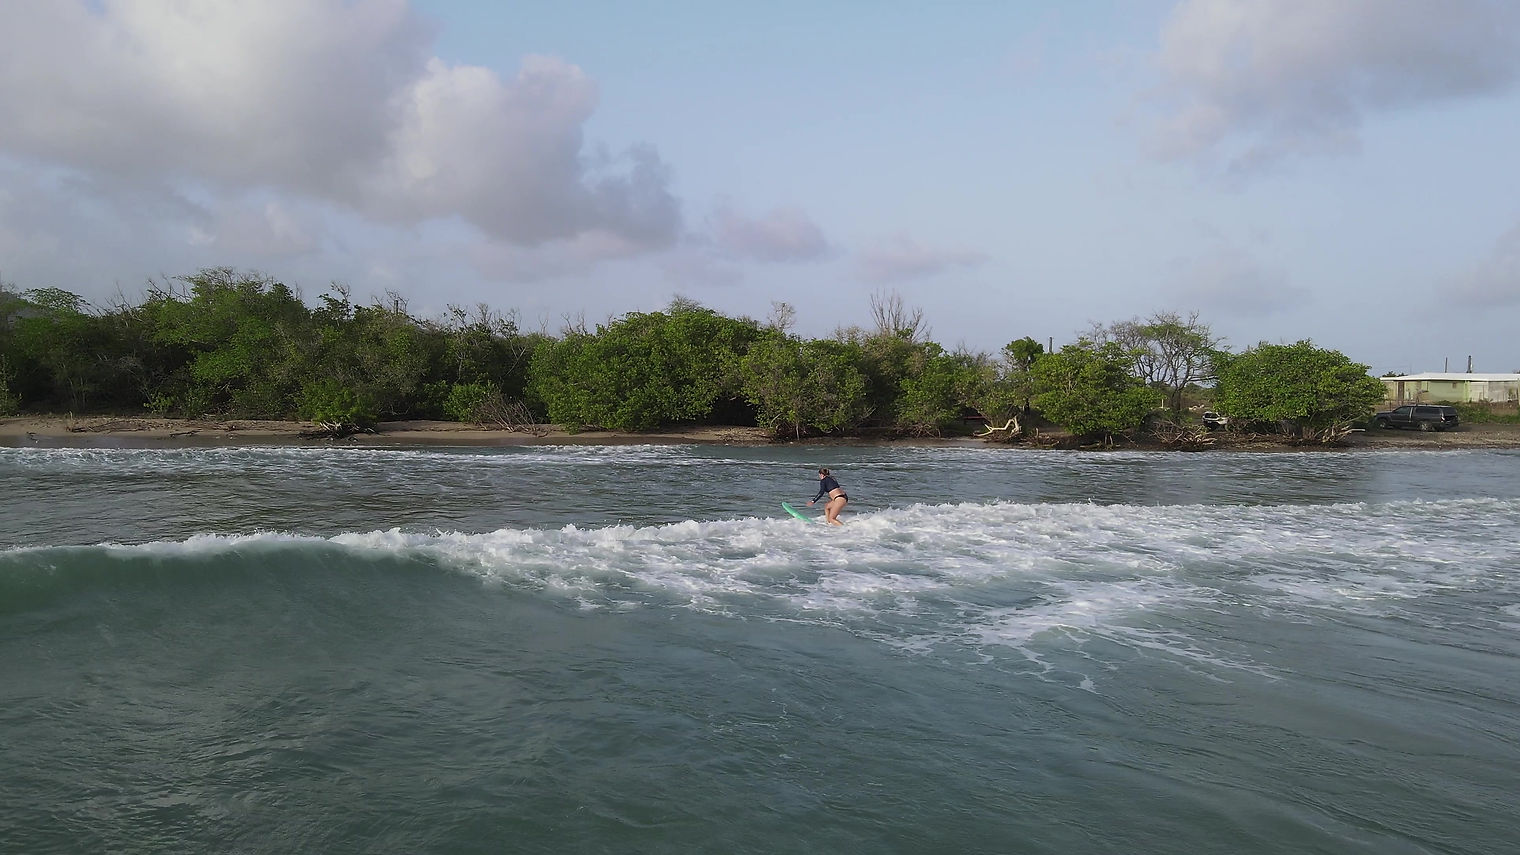 St. Croix Surf & SUP Lesson